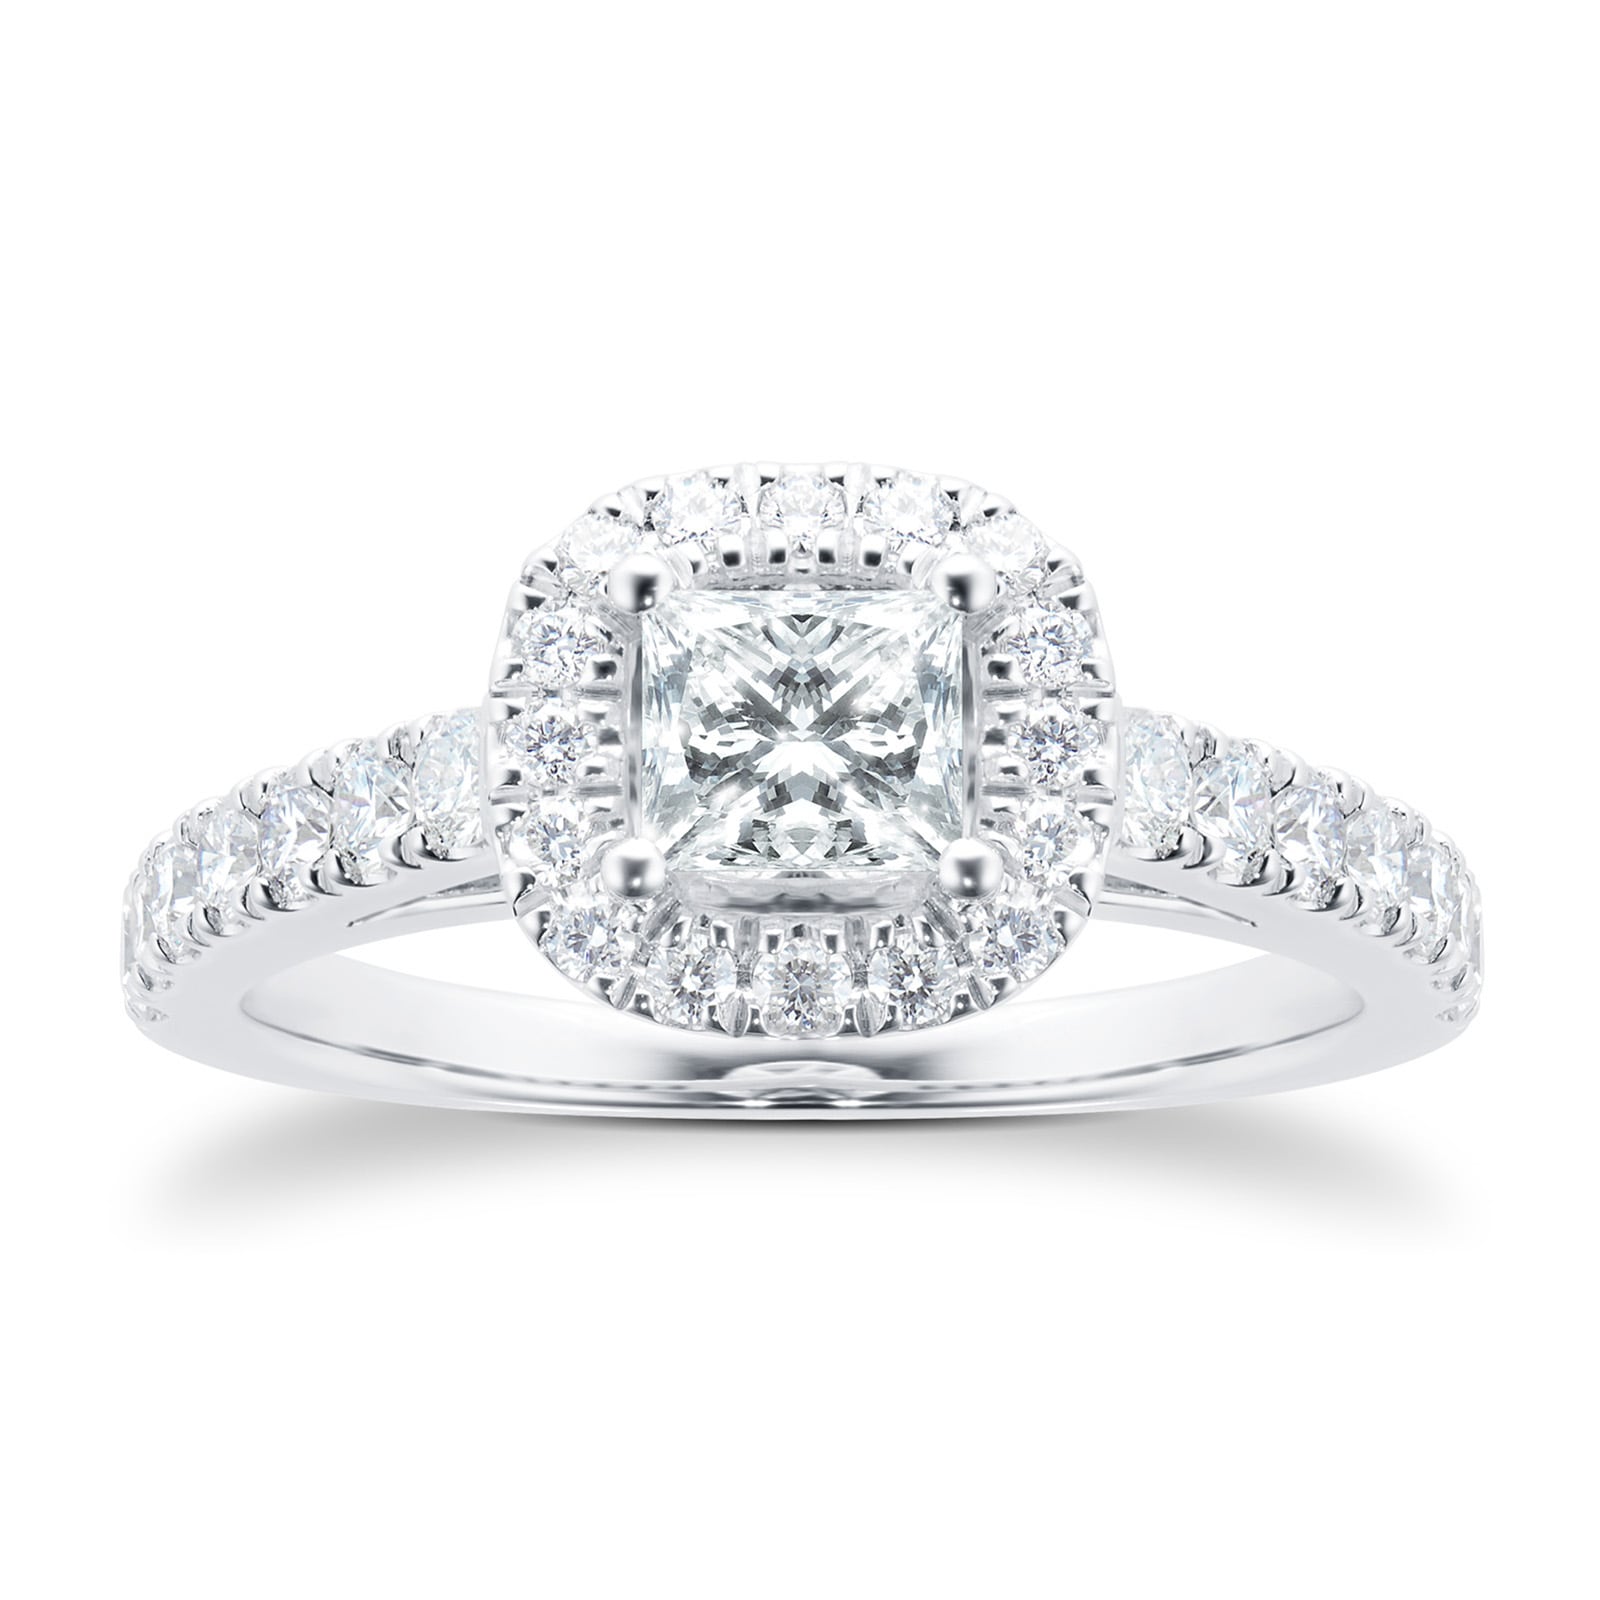 18ct White Gold Princess Cut 1.00 Carat 88 Facet Diamond Ring - Ring Size K